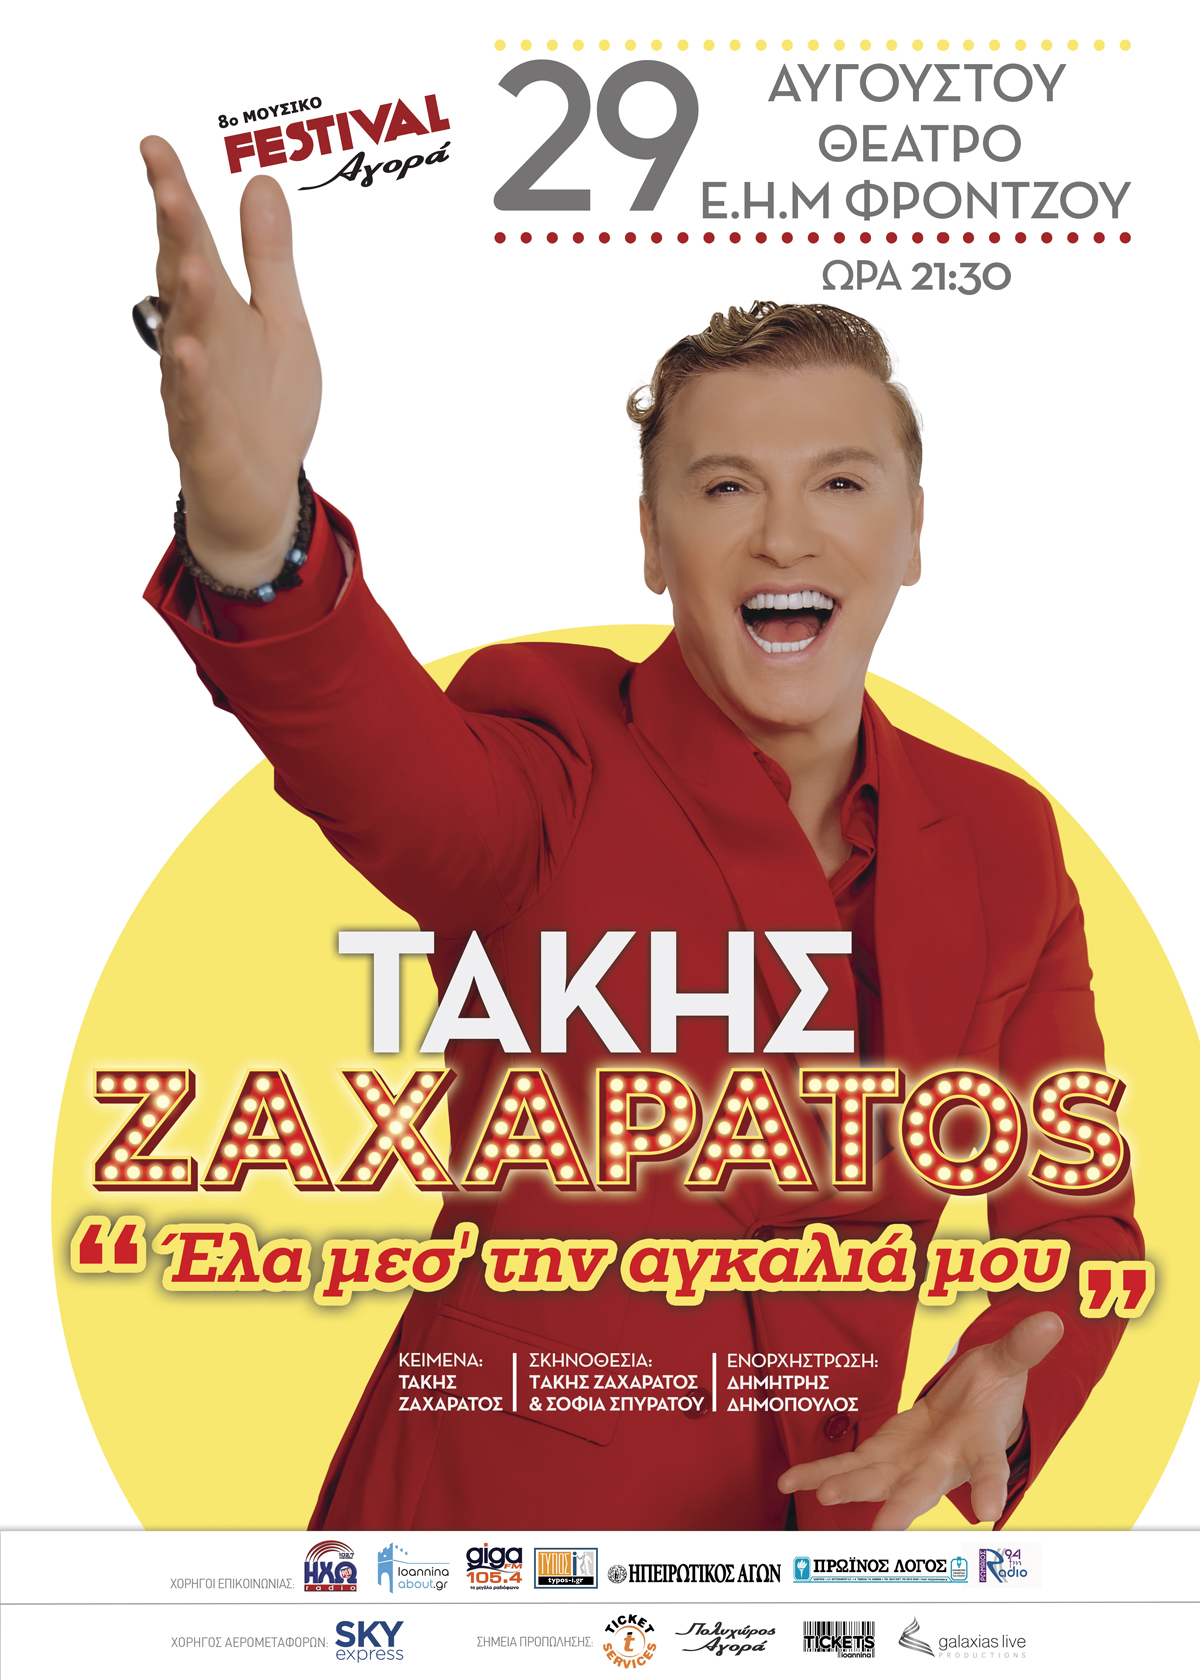 Takis Zacharatos5